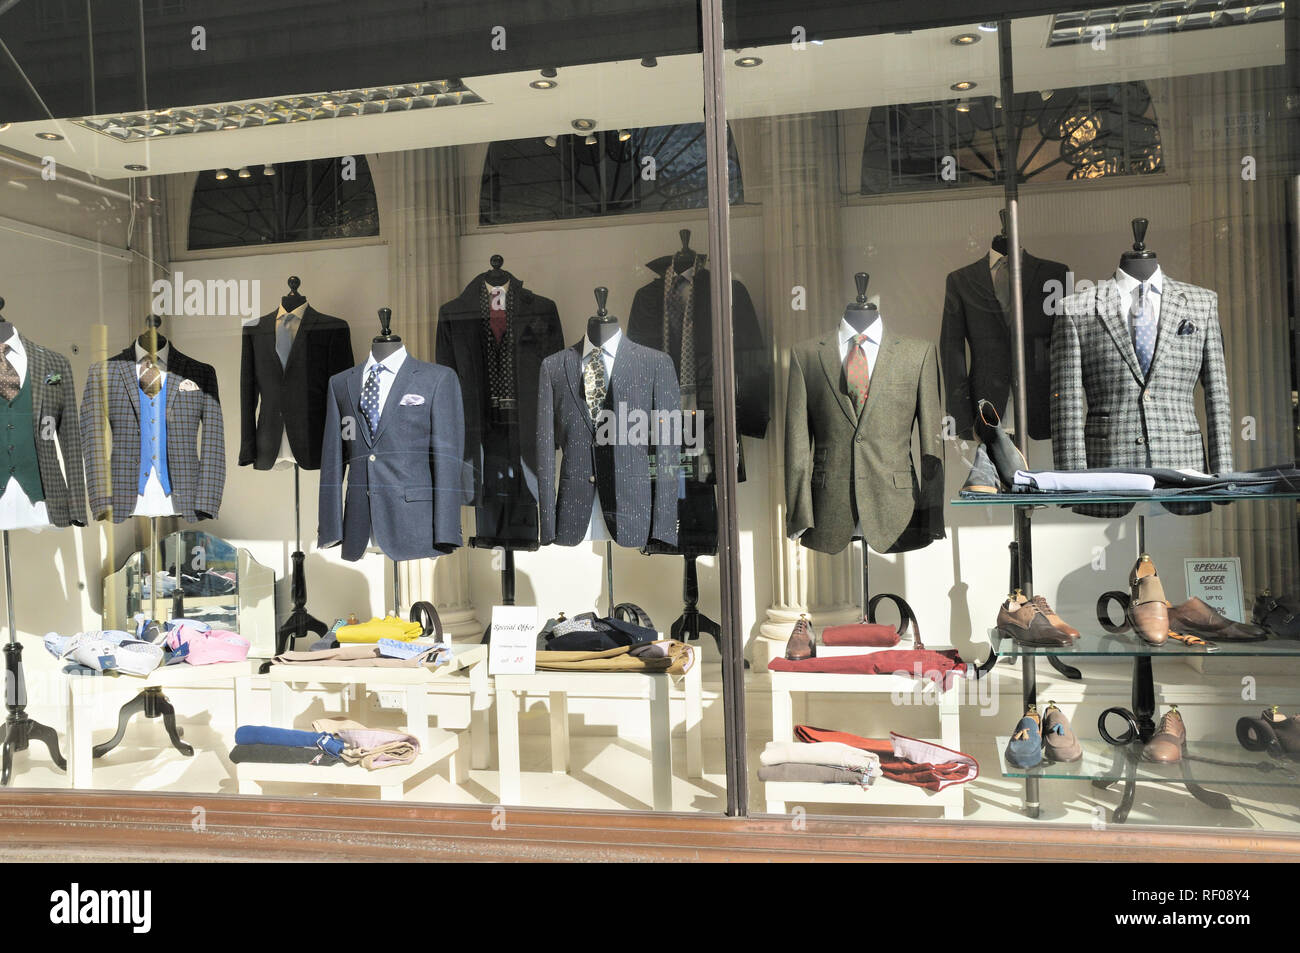 Stilvolle Herrenmode Anzüge und Jacke Kombinationen im Shop Fenster anzuzeigen, London, England, Großbritannien Stockfoto